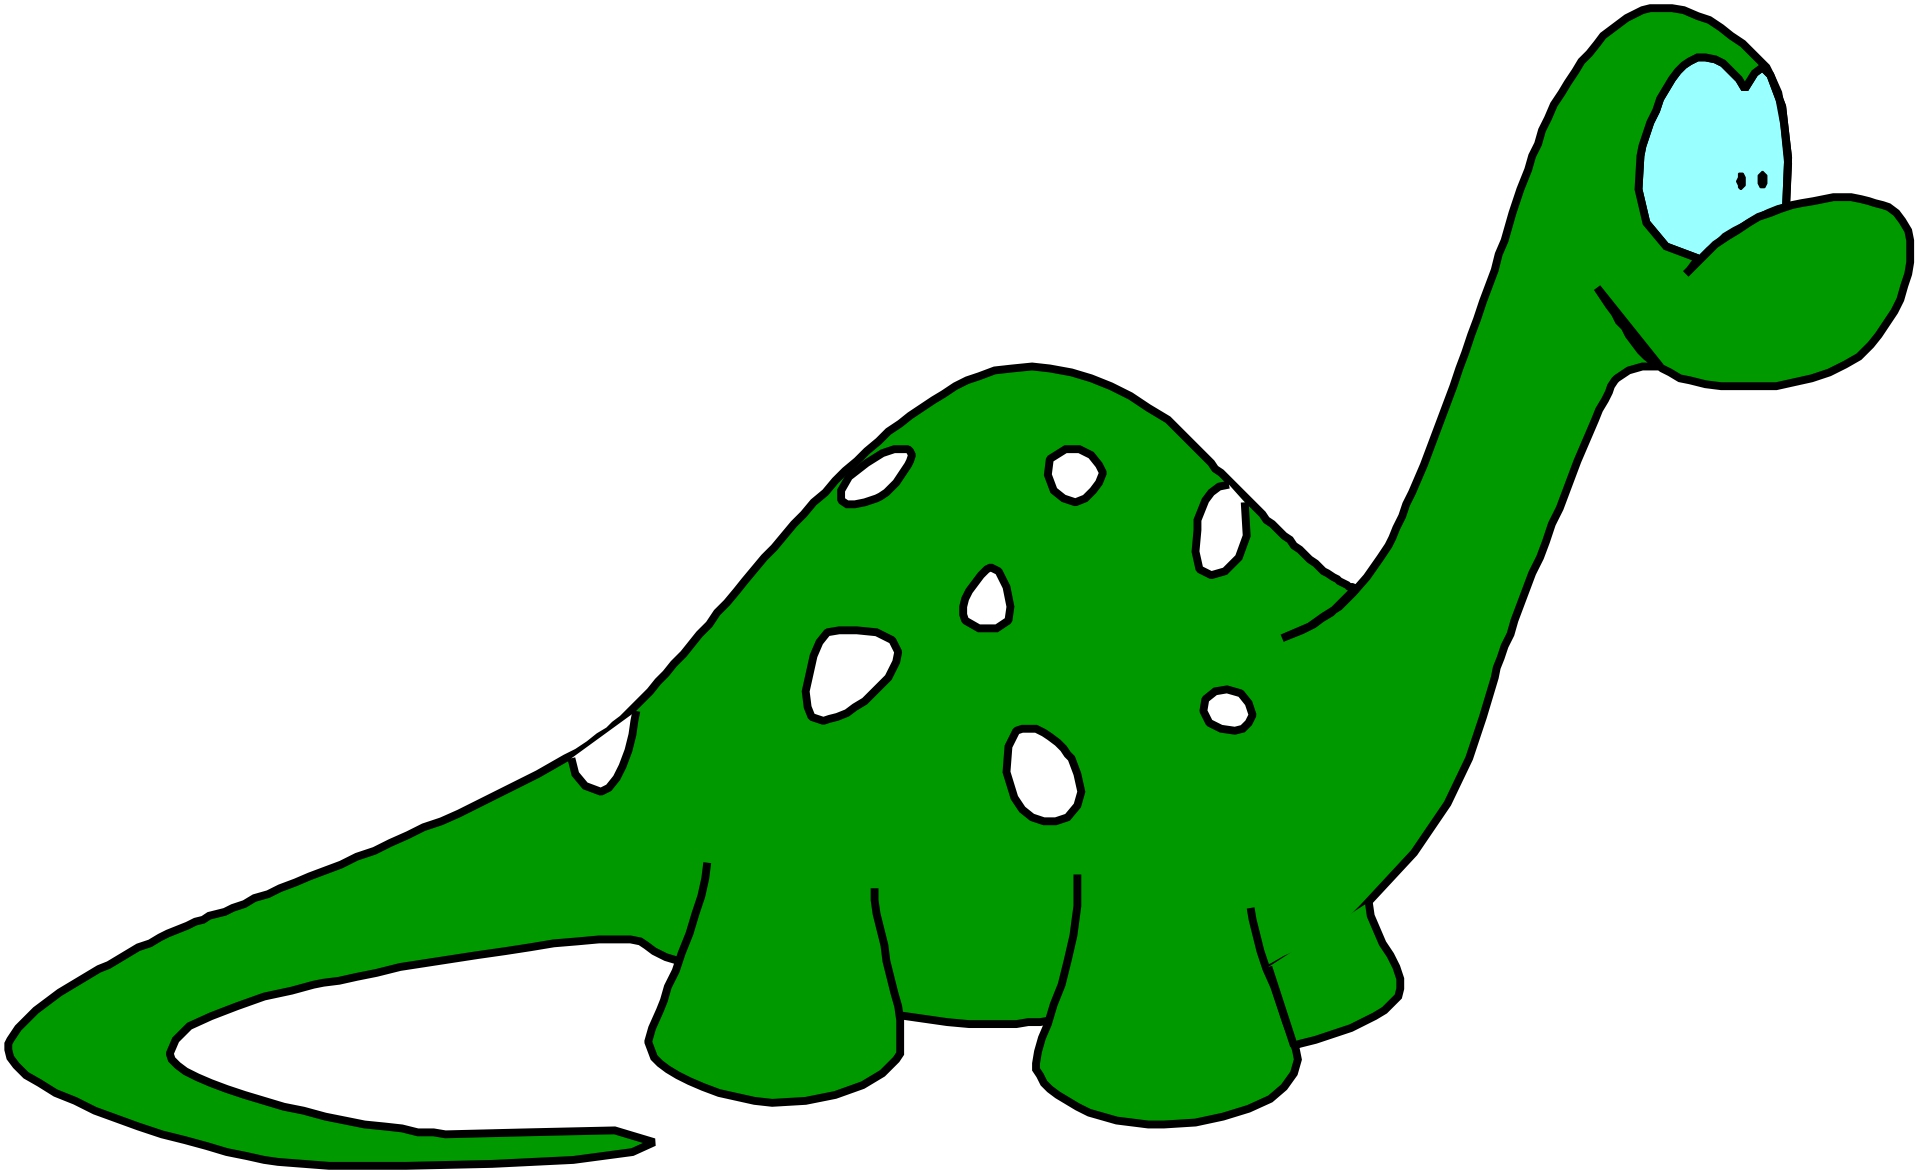 Dinosaur green color cartoon illustration. 18243904 PNG